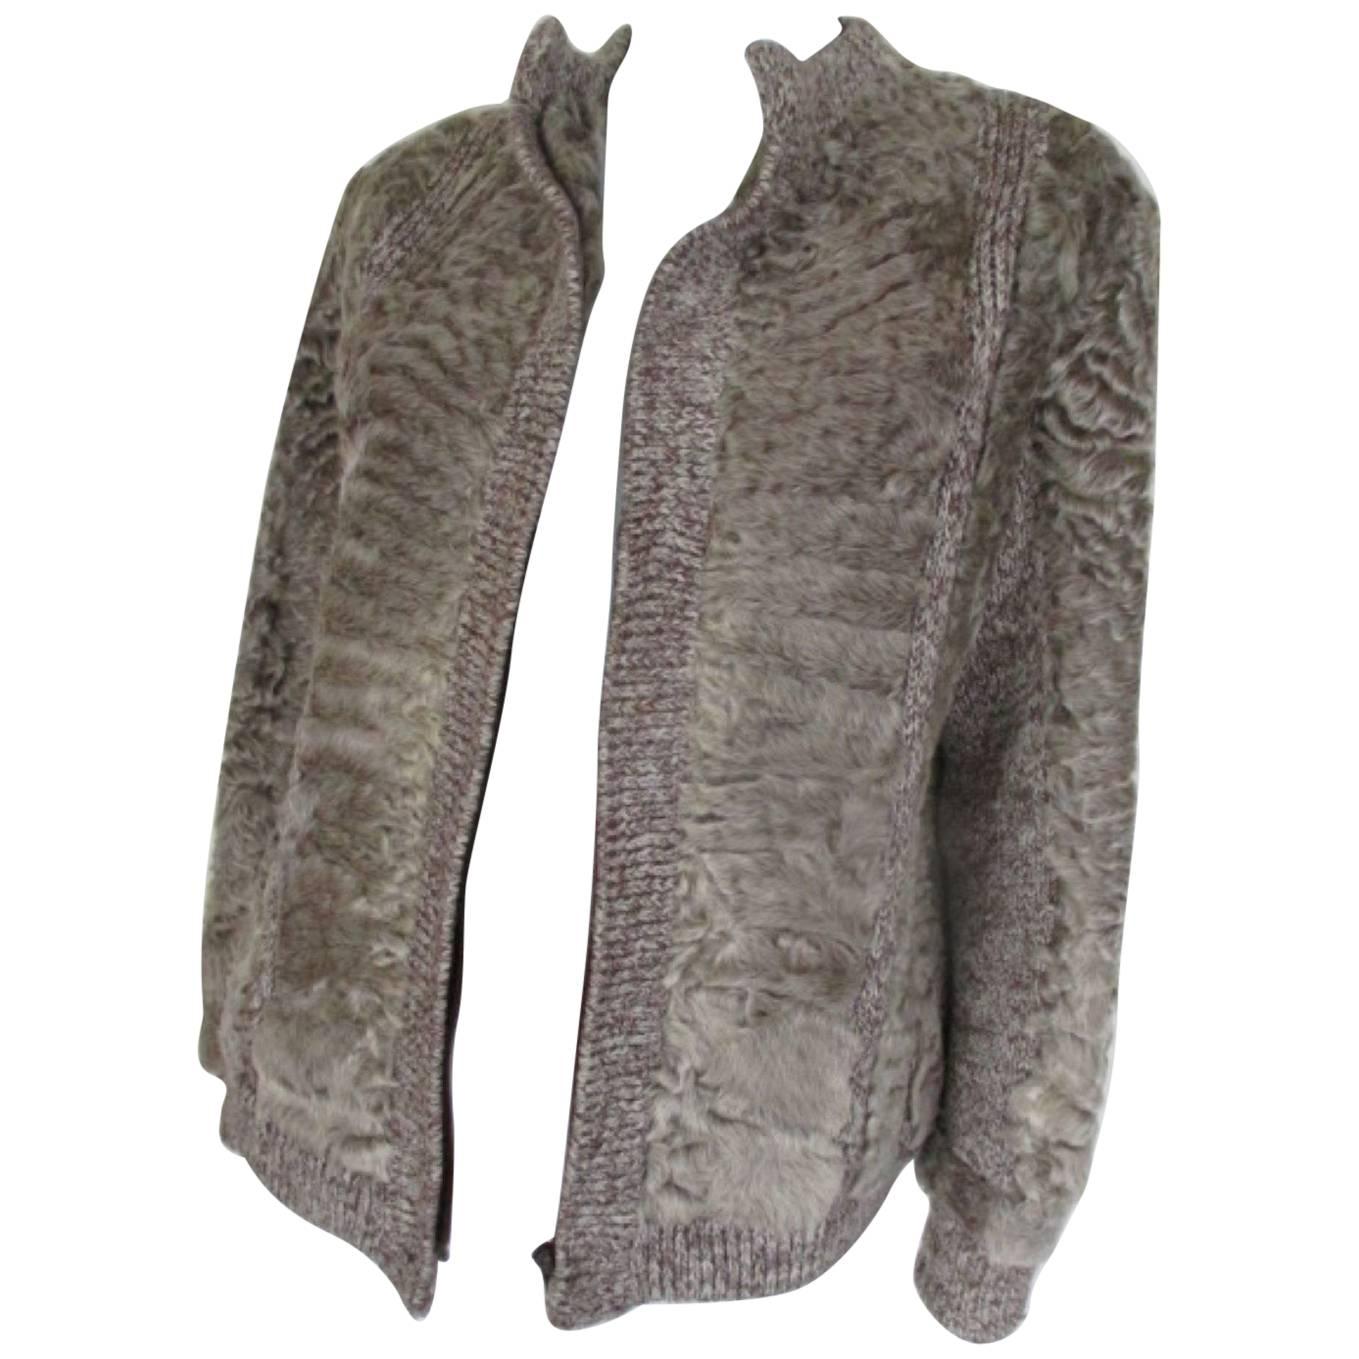 Knitted Jacket with Karakul Lamb Fur